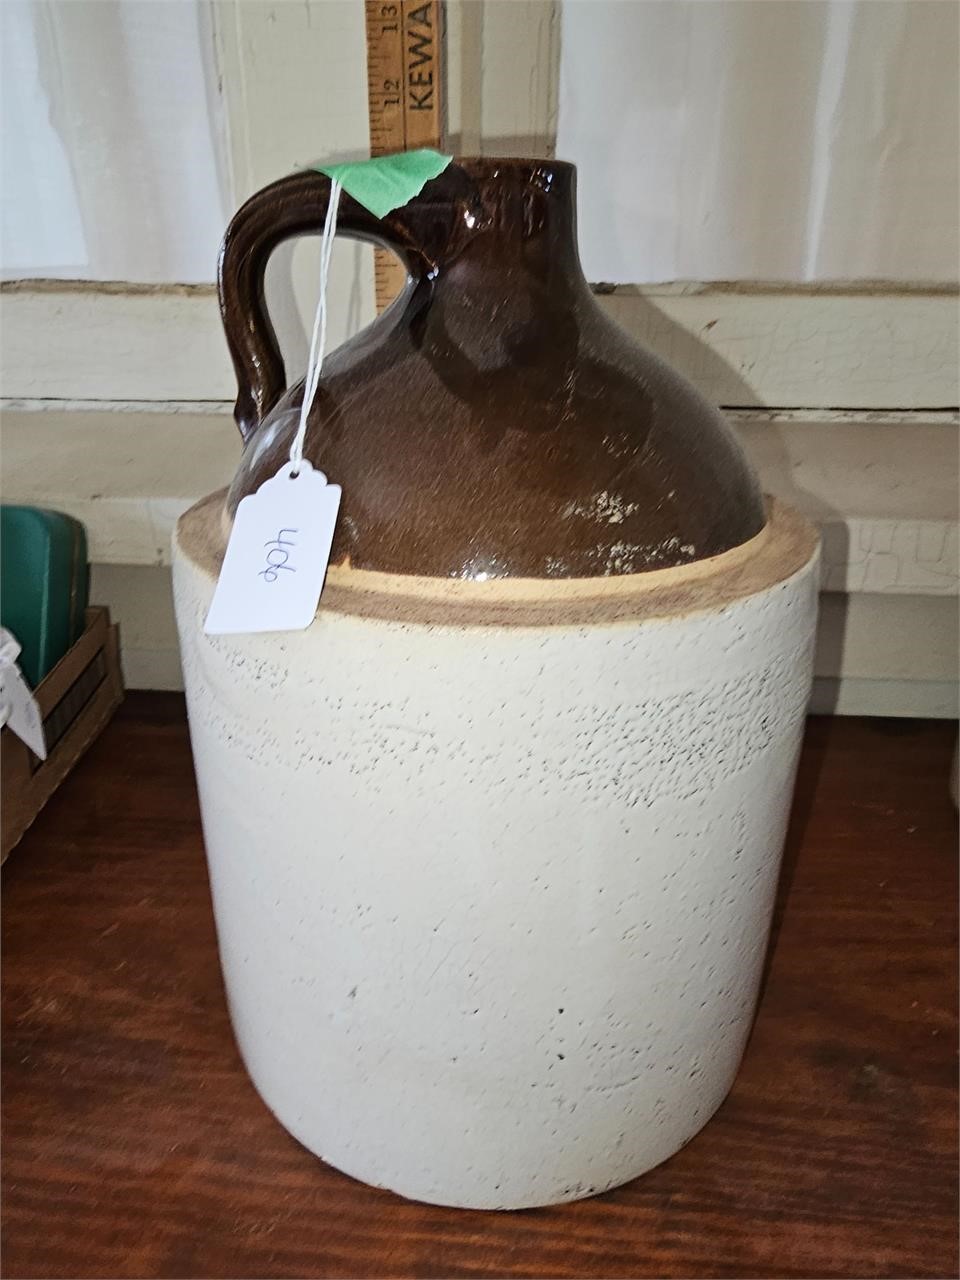 Brown and tan pottery jug no markings